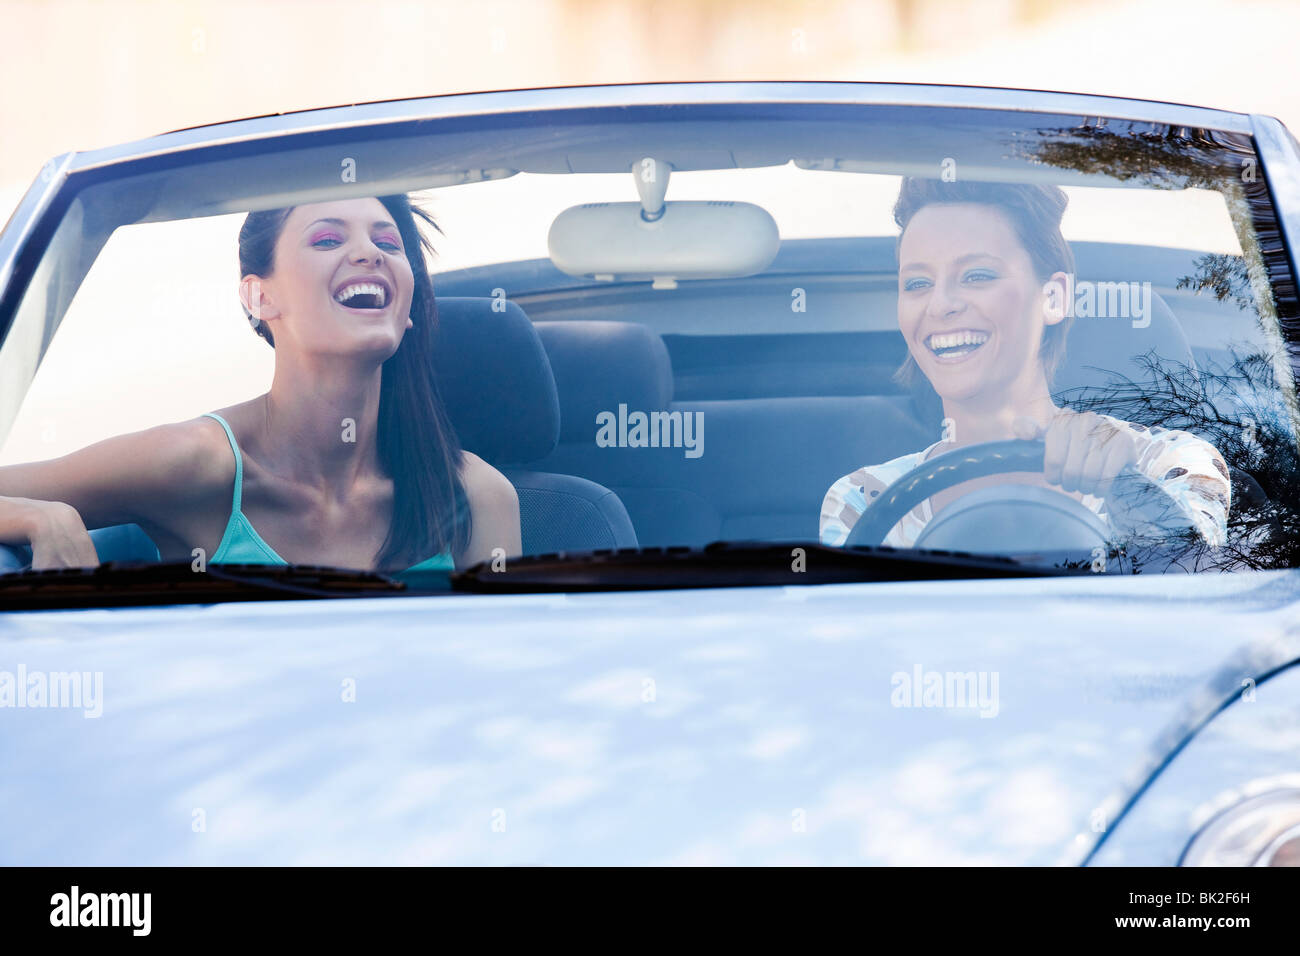 Deux femmes smiling in a car Banque D'Images